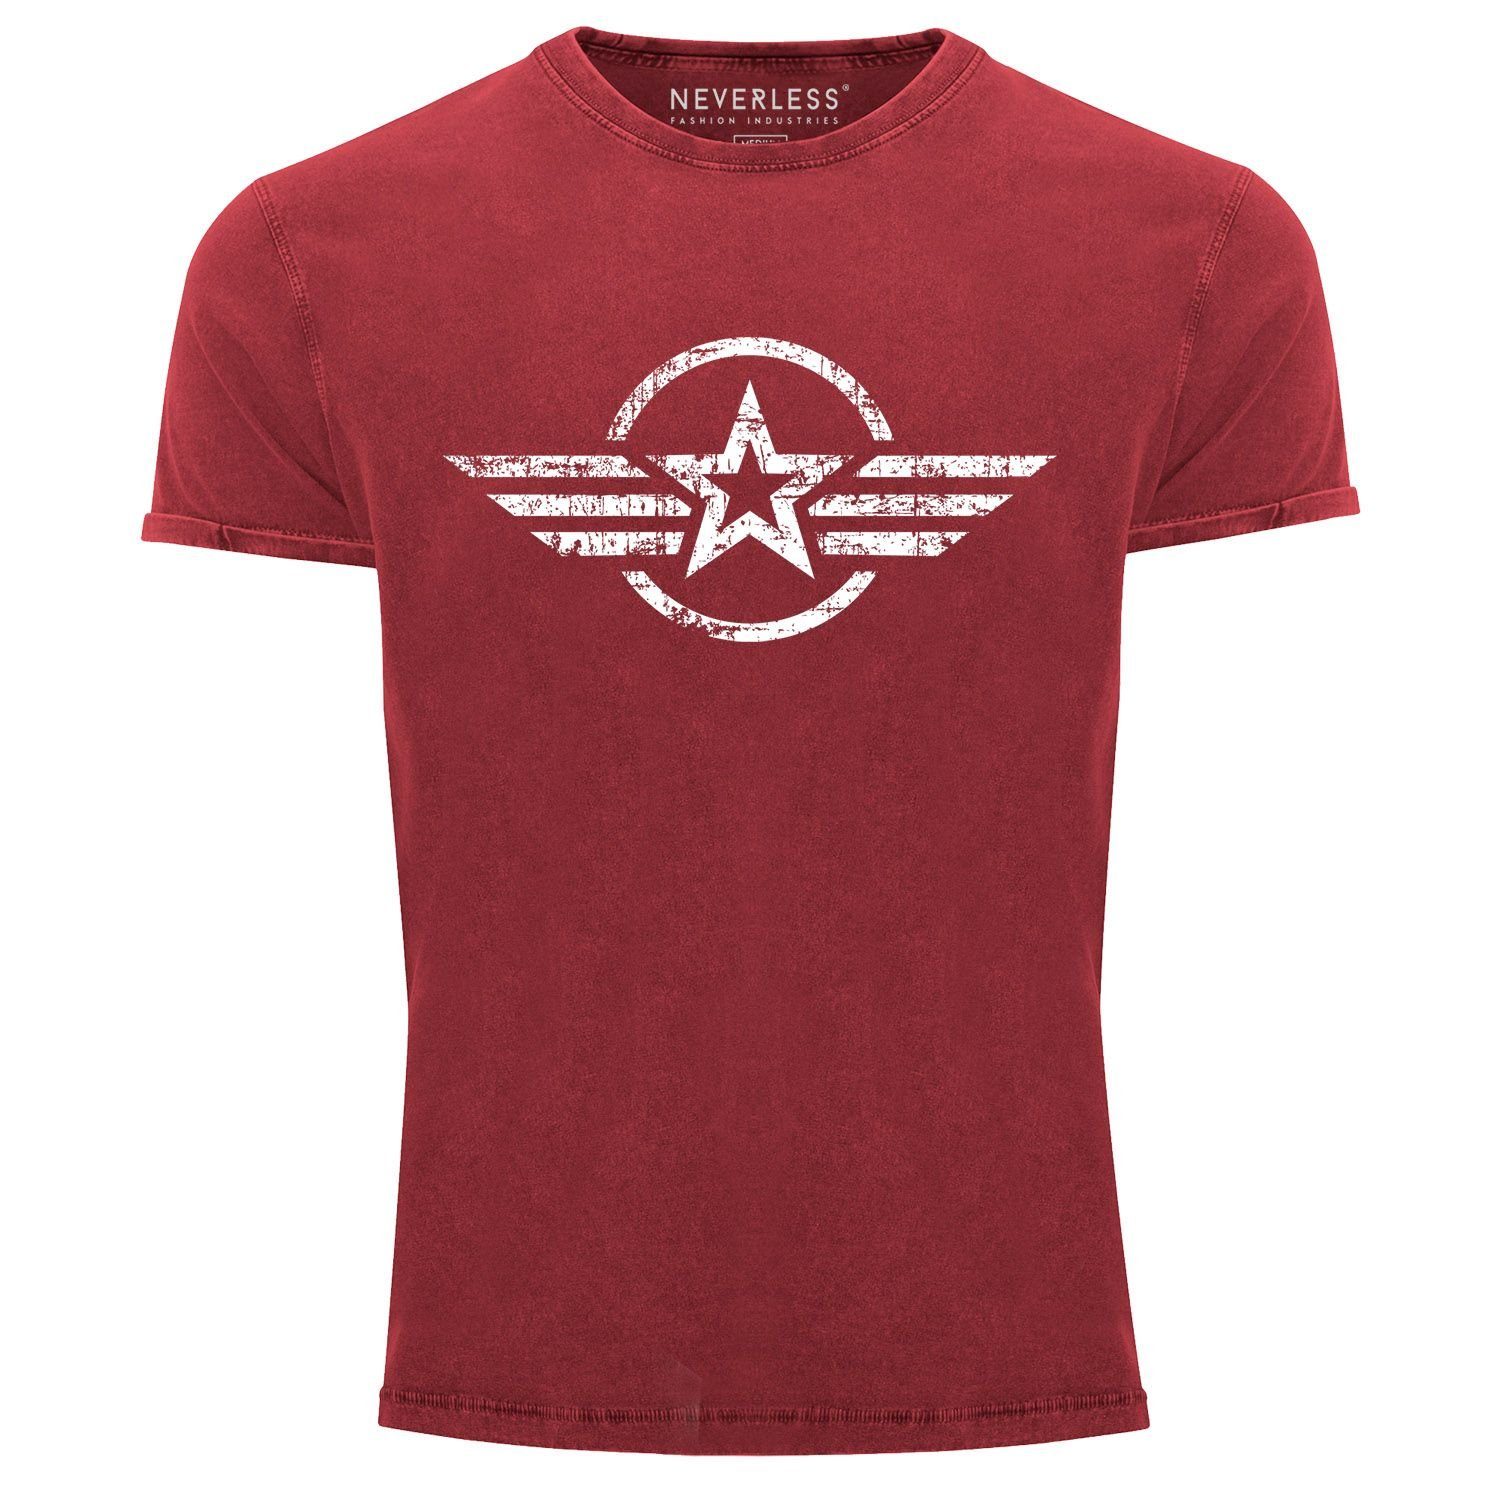 Neverless Print-Shirt Herren Vintage Shirt Airforce Stern Army Military Aufdruck Printshirt T-Shirt Aufdruck Used Look Slim Fit Neverless® mit Print rot